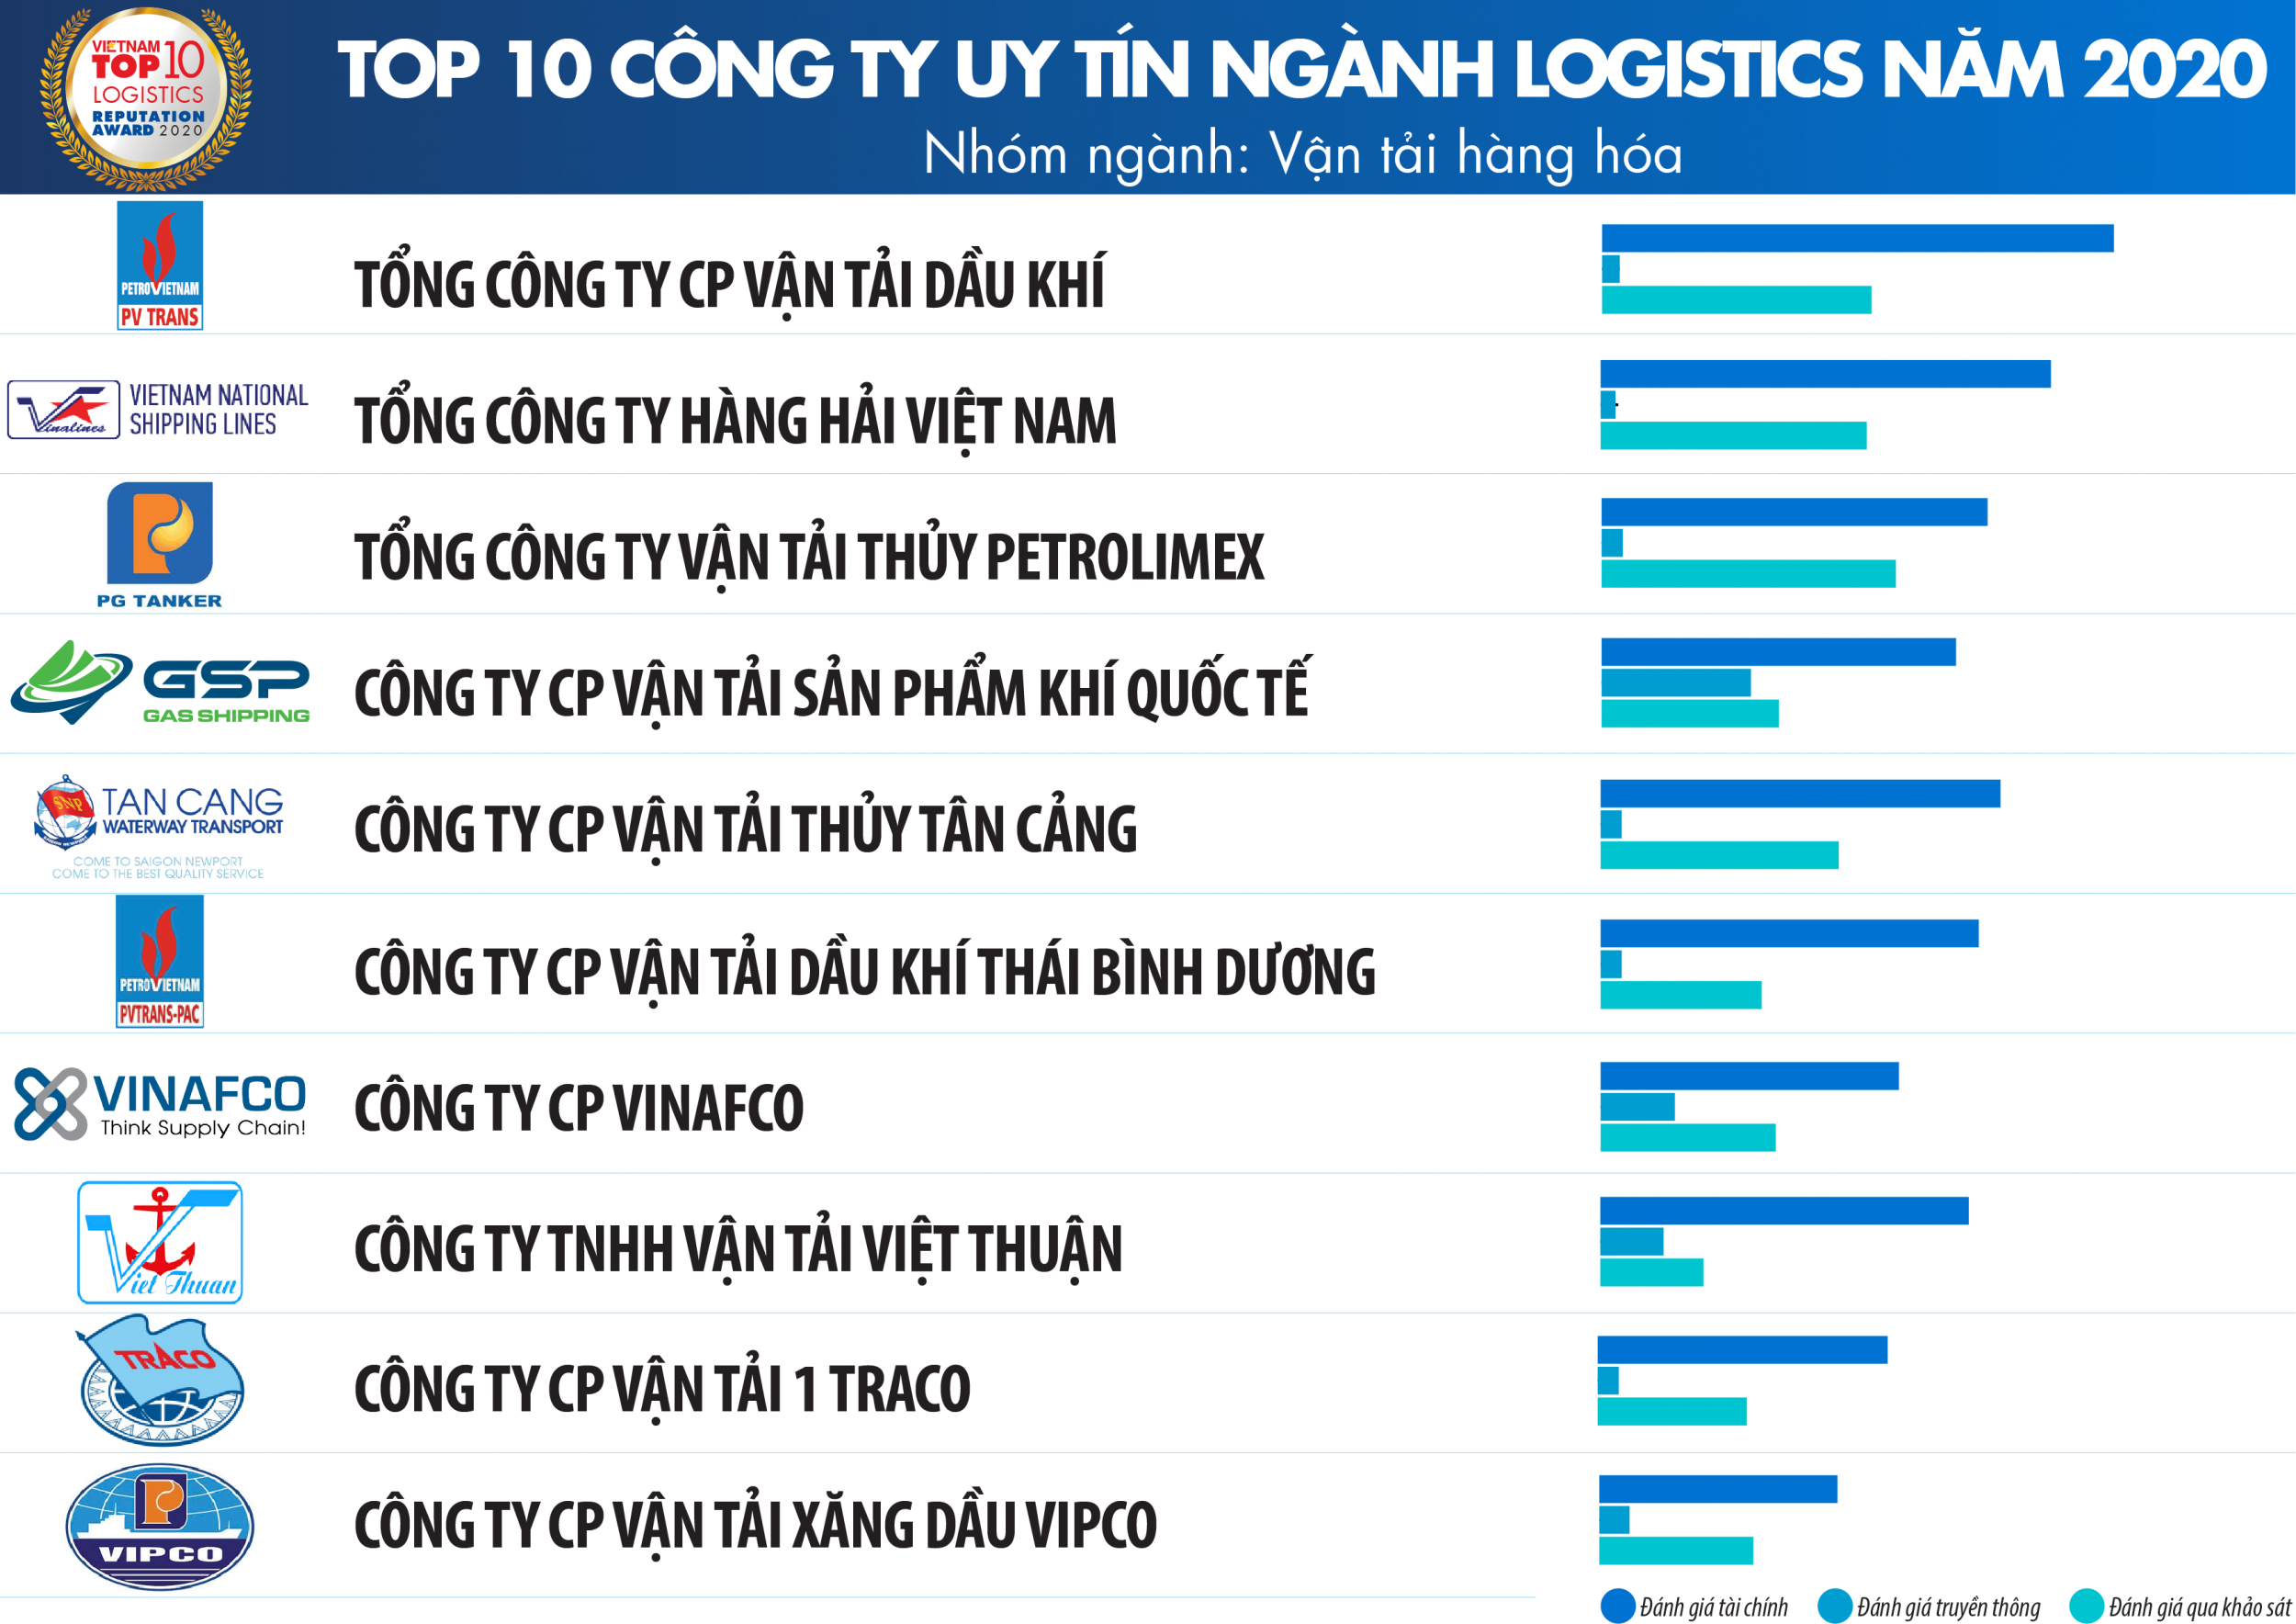 PVTrans vào Top 10 Công ty uy tín ngành Logistics 2020